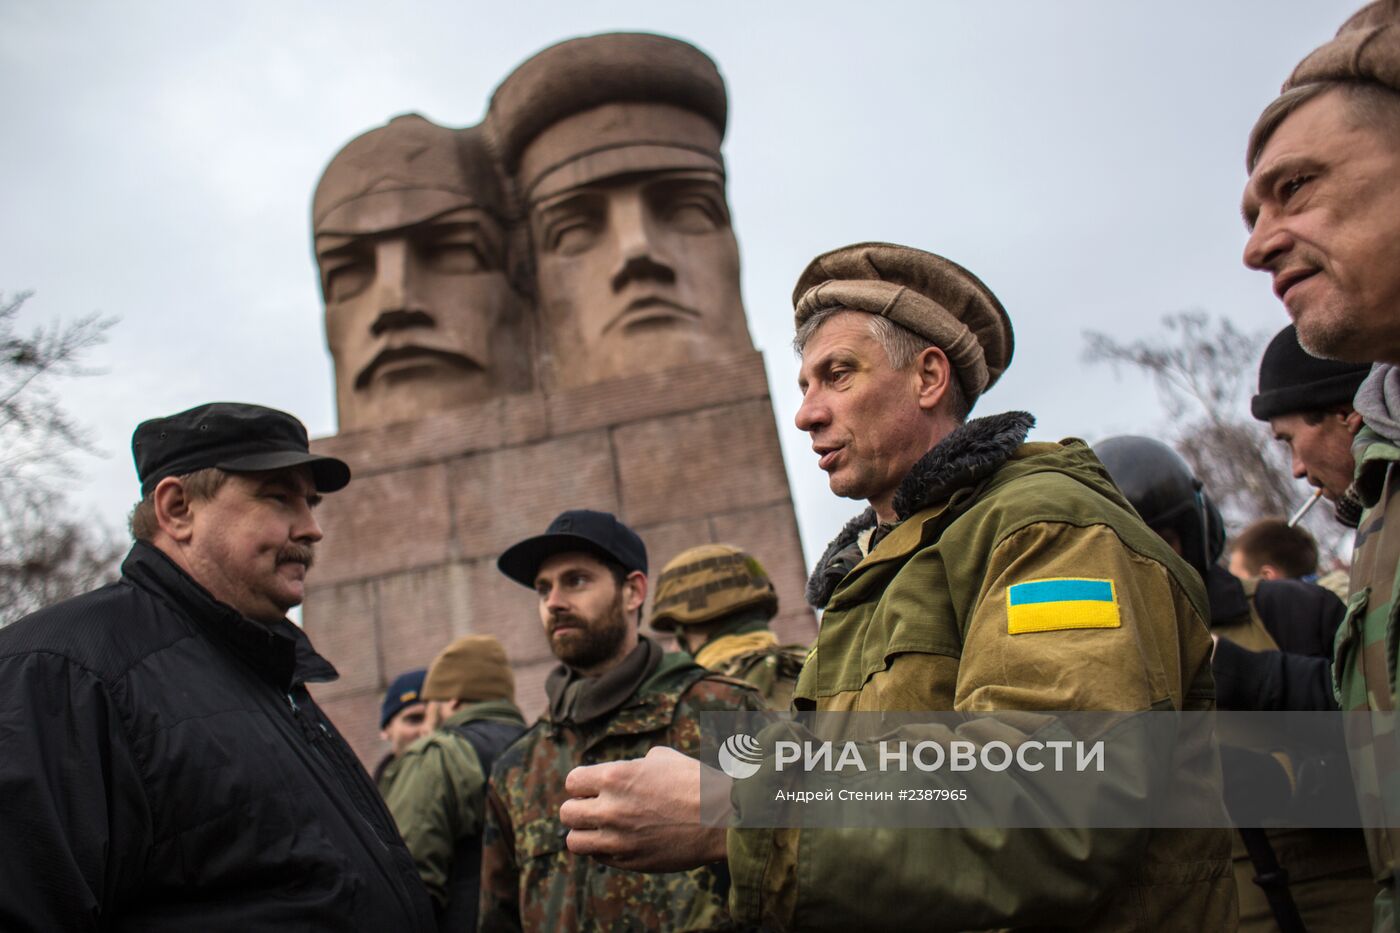 Сторонники оппозиции разрушают памятник чекистам в Киеве